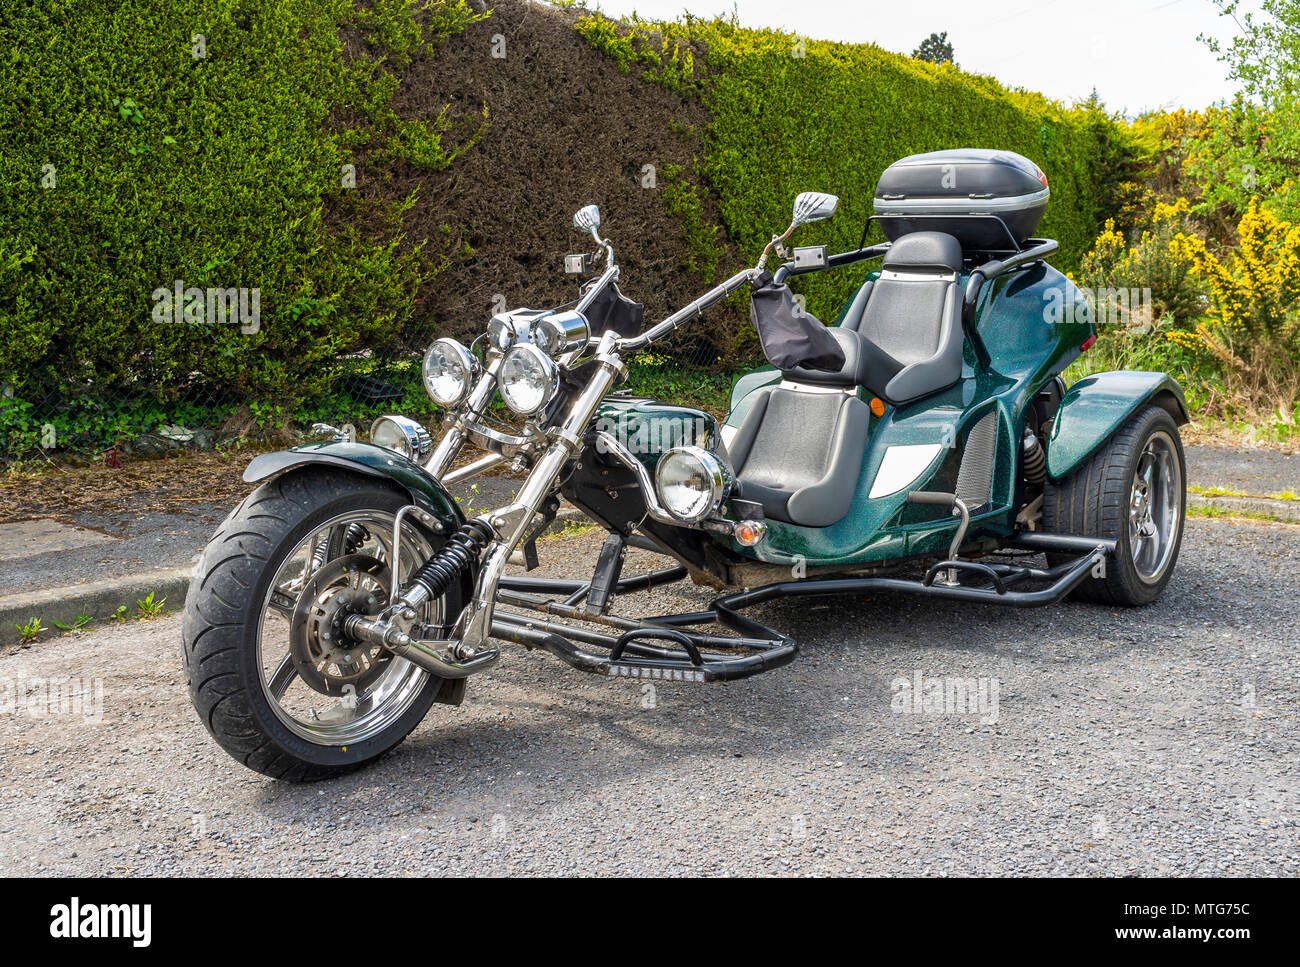 Motocicletta 3 ruote immagini e fotografie stock ad alta risoluzione - Alamy